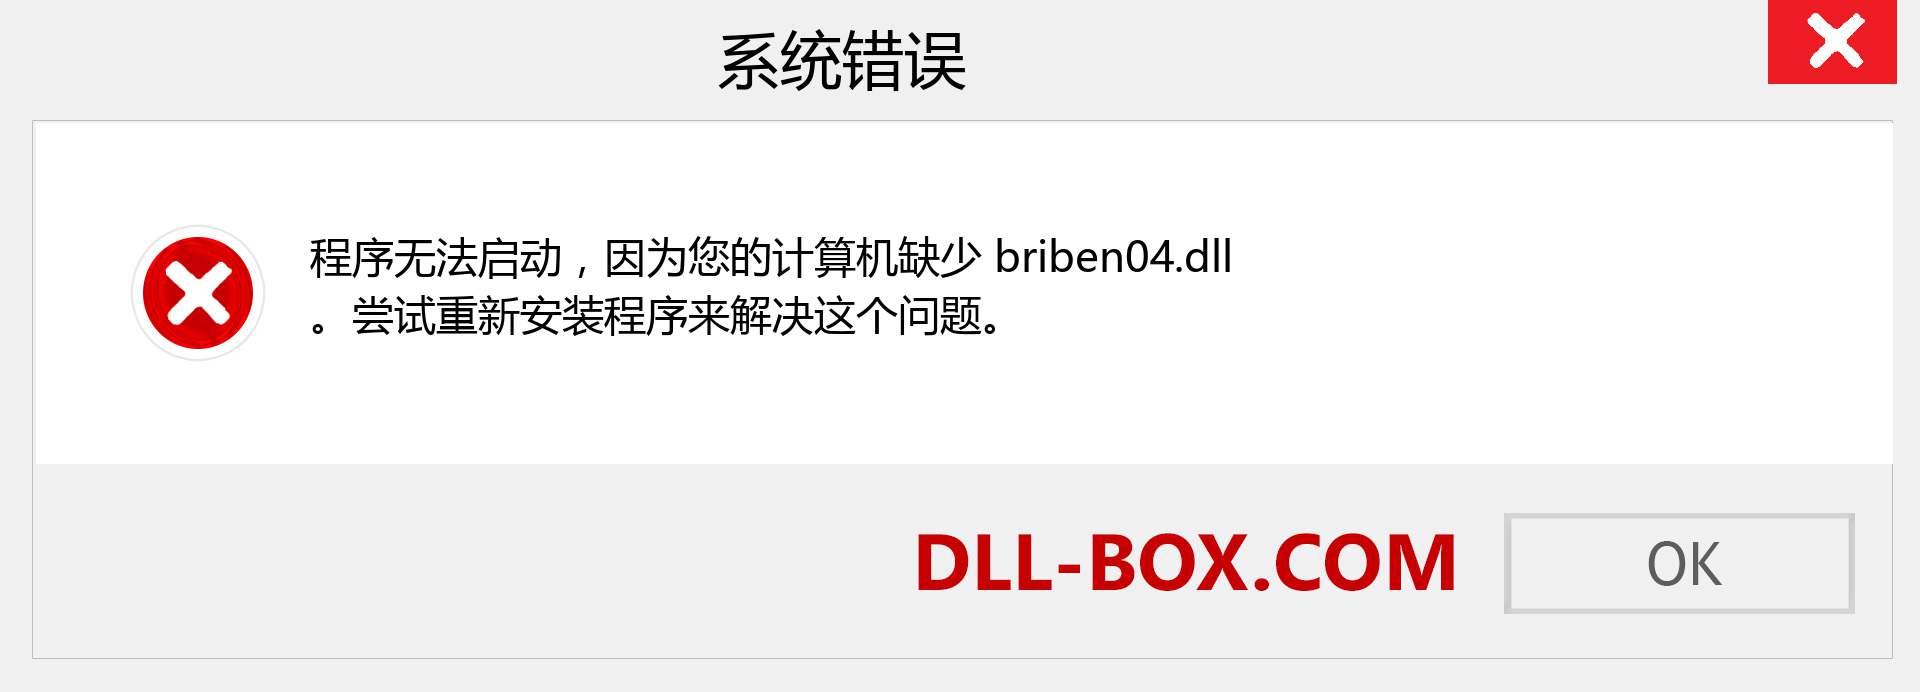 briben04.dll 文件丢失？。 适用于 Windows 7、8、10 的下载 - 修复 Windows、照片、图像上的 briben04 dll 丢失错误